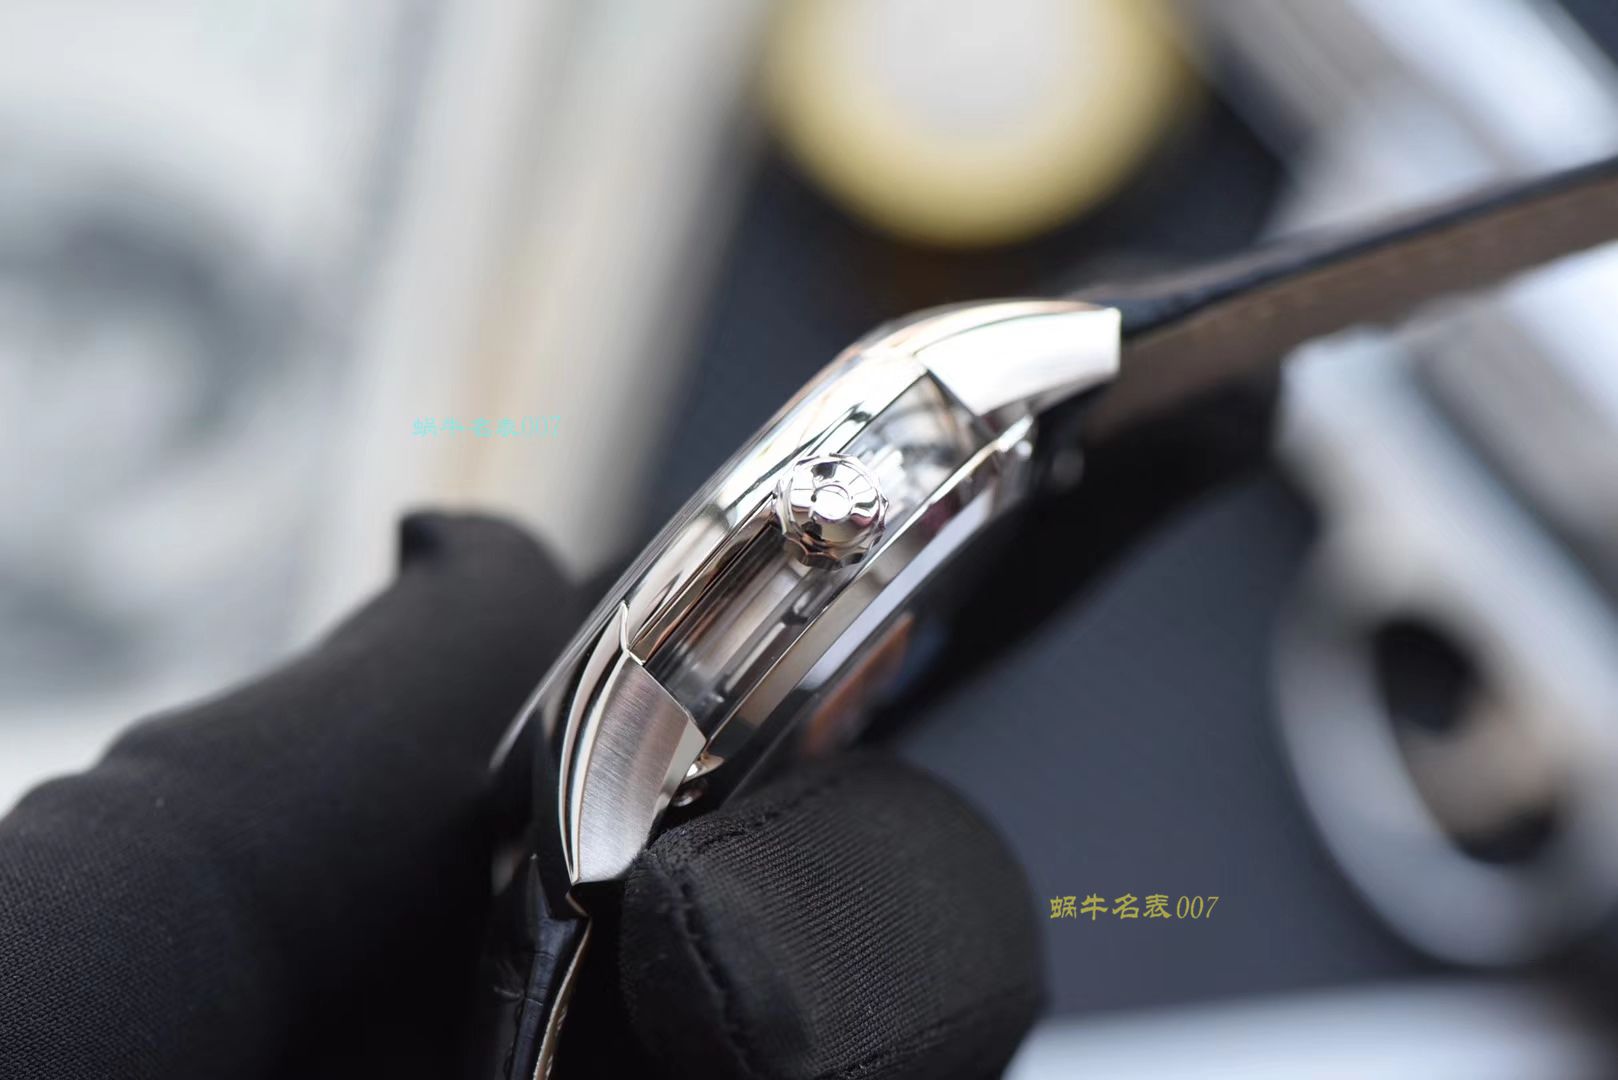 （视频评测）欧米茄碟飞系列431.33.41.21.01.001腕表【VS厂顶级复刻手表】 / M369